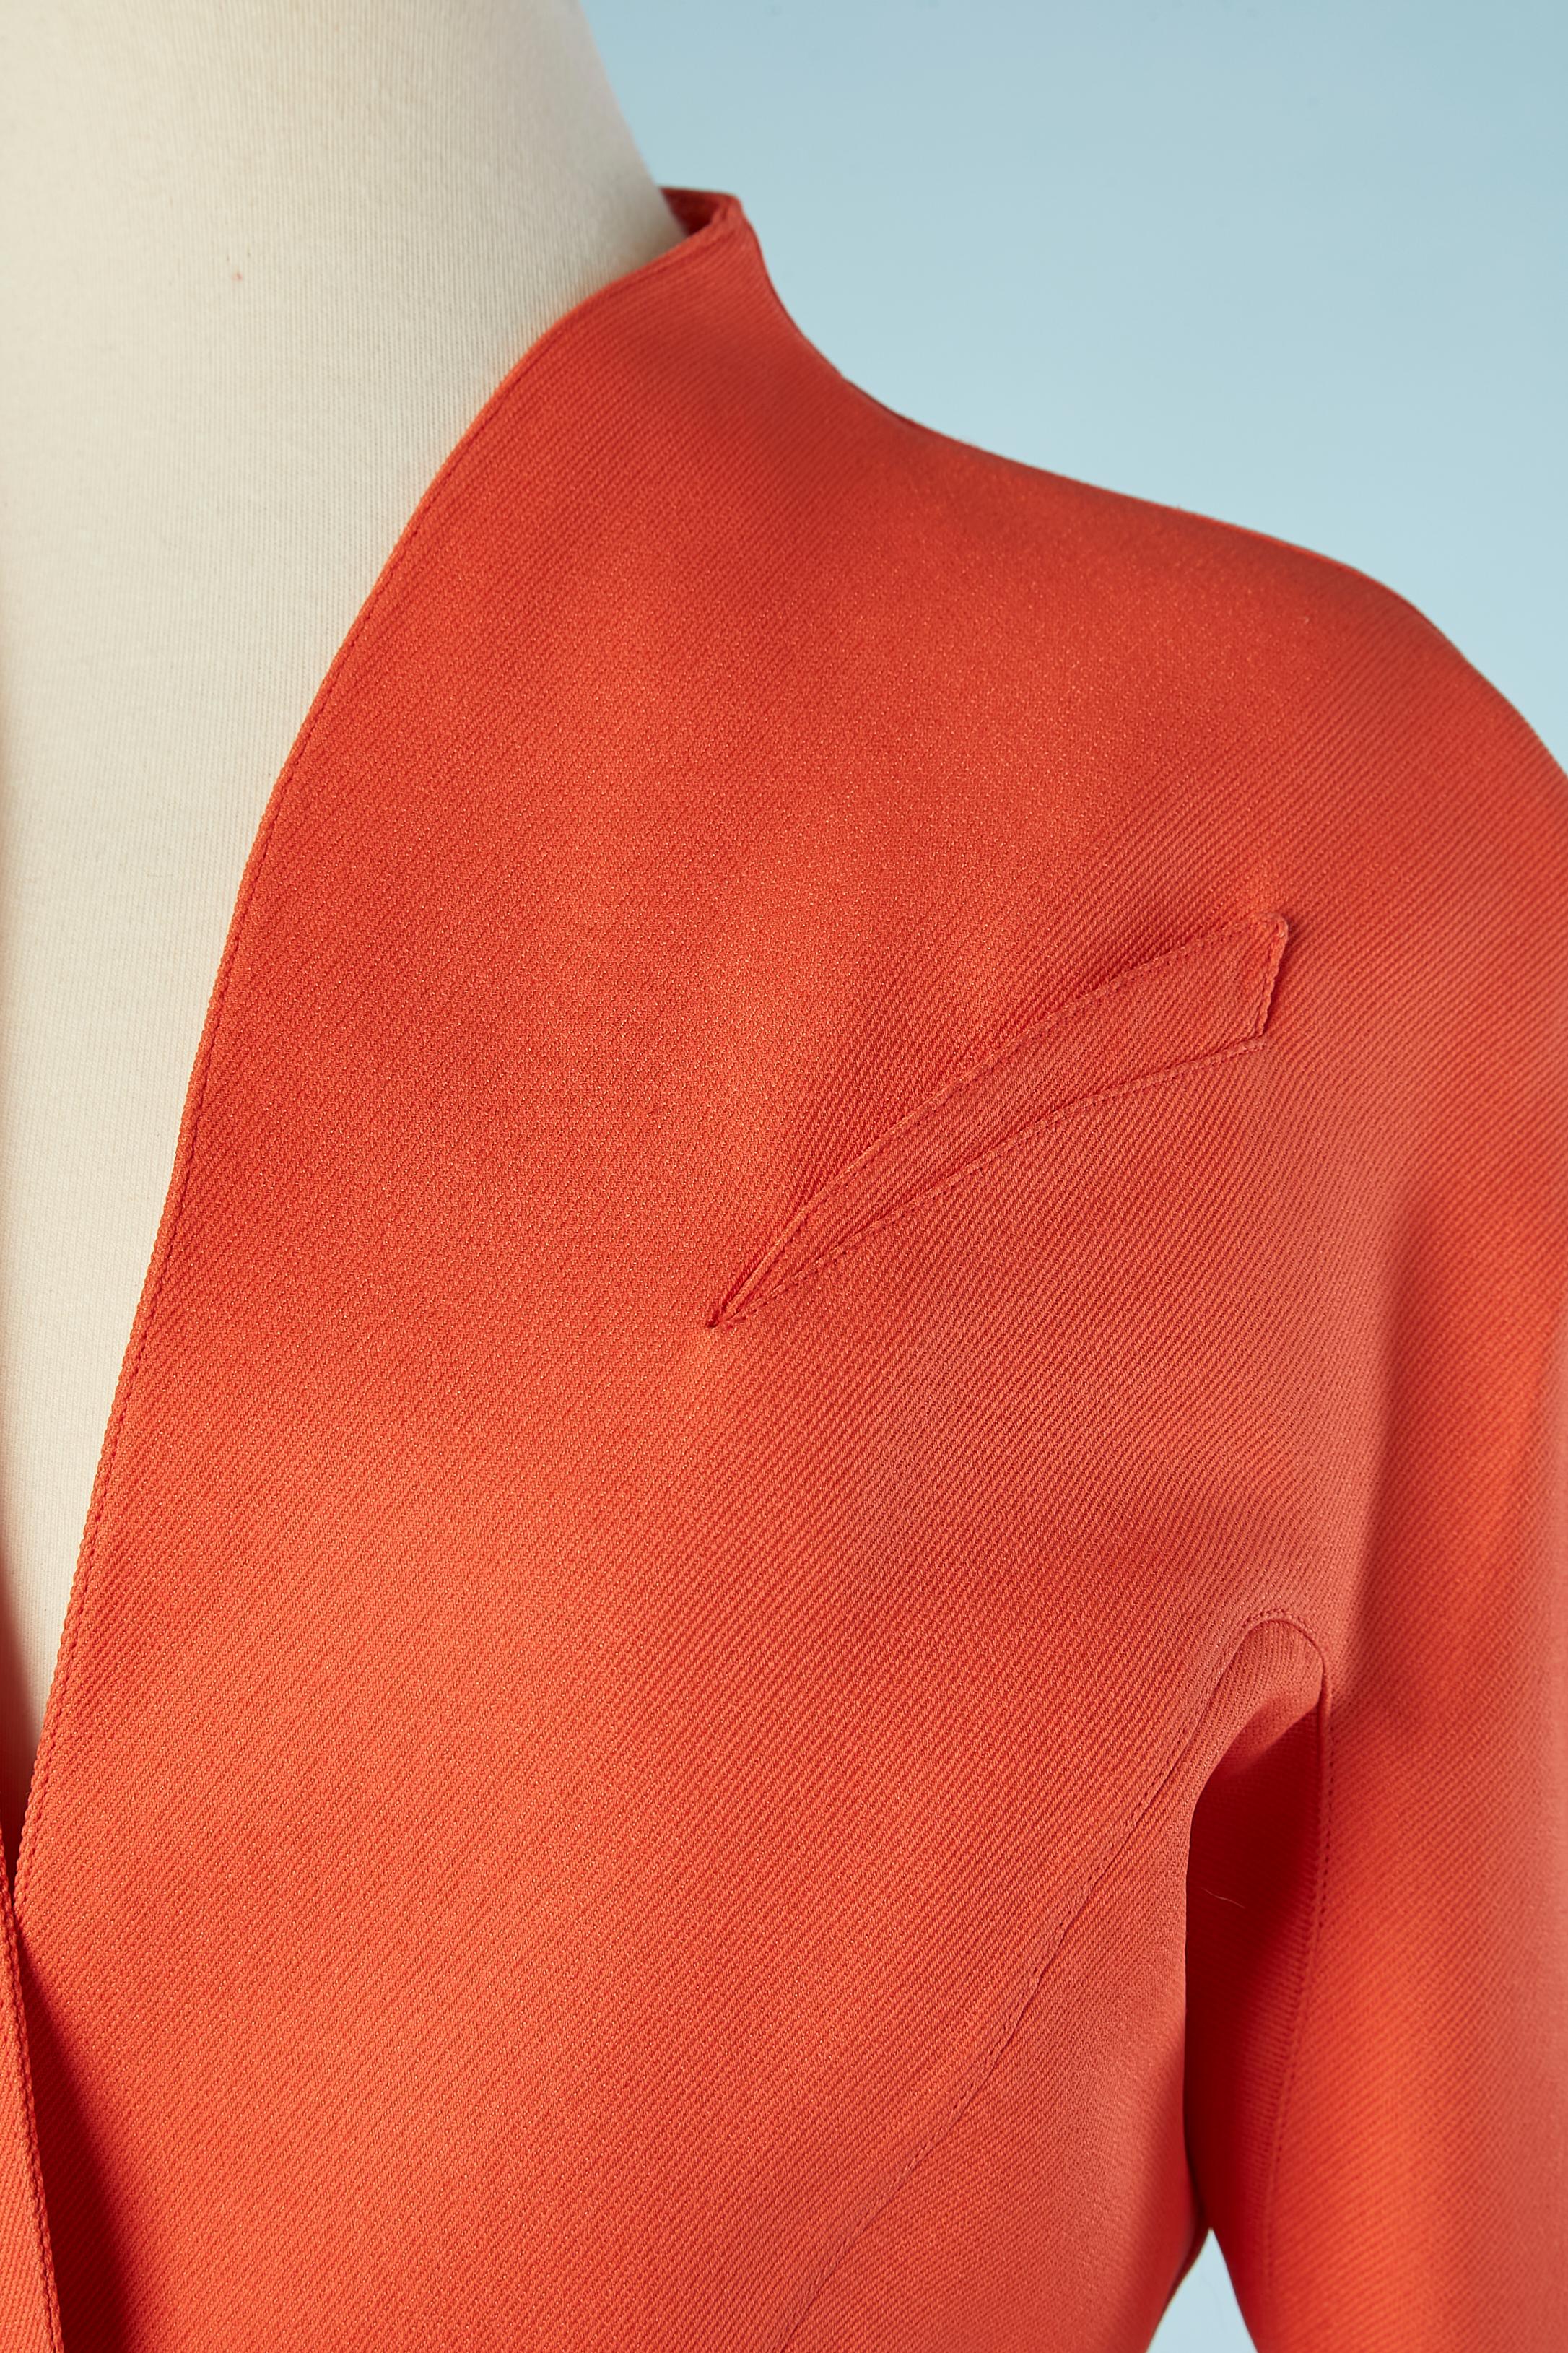 Orange  veste à simple boutonnage avec 3 boutons-pression au milieu du devant.Composition du tissu : 53% acétate, 47% rayonne.  Doublure en soie. 
Découpage. 
TAILLE 38 (Fr) 8 (Us)